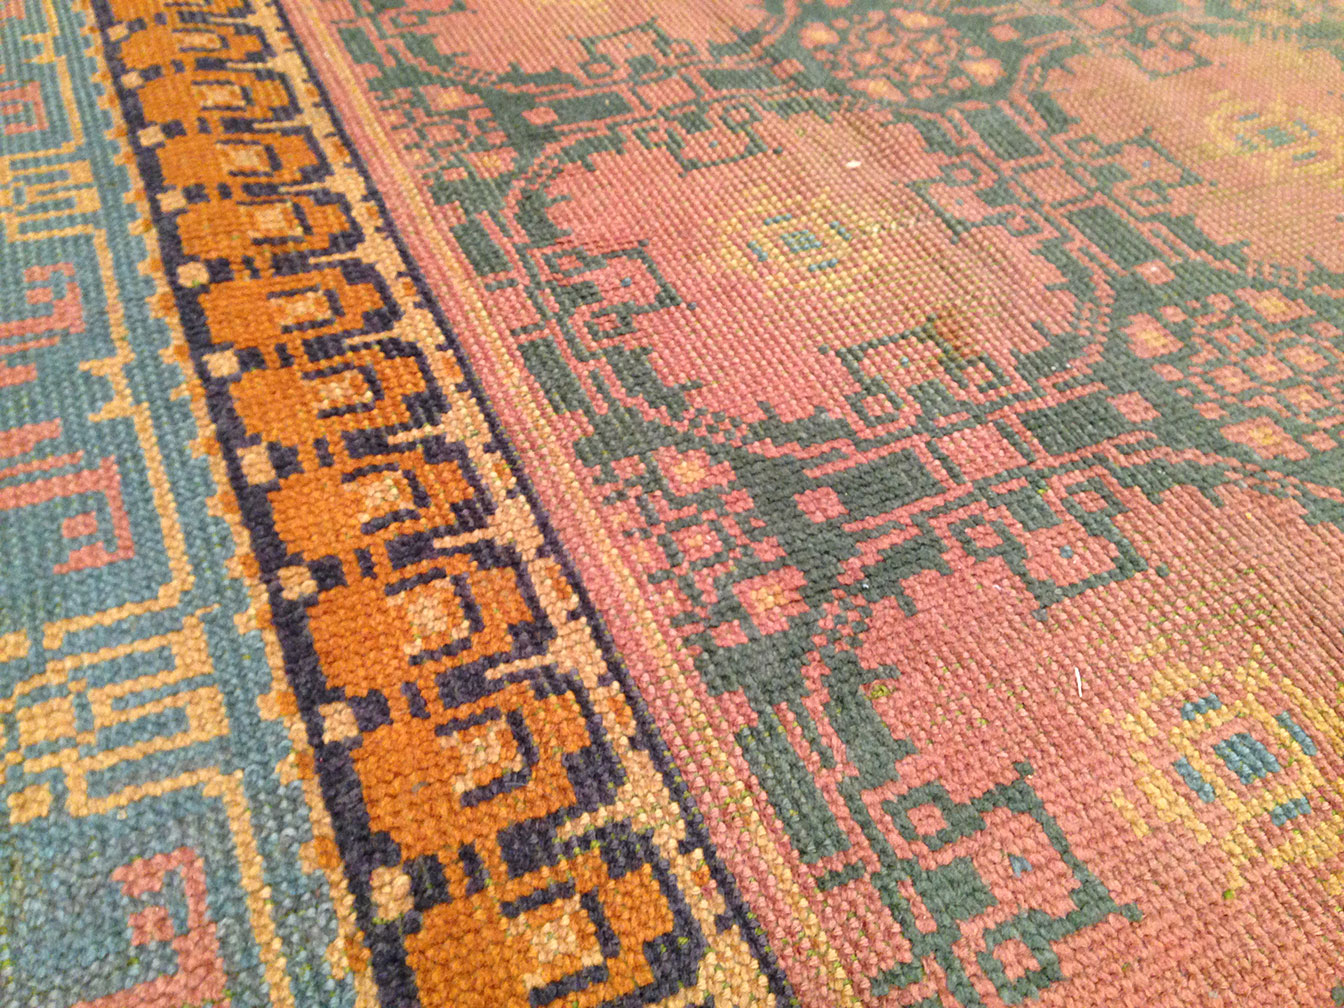 Antique donegal Carpet - # 50676